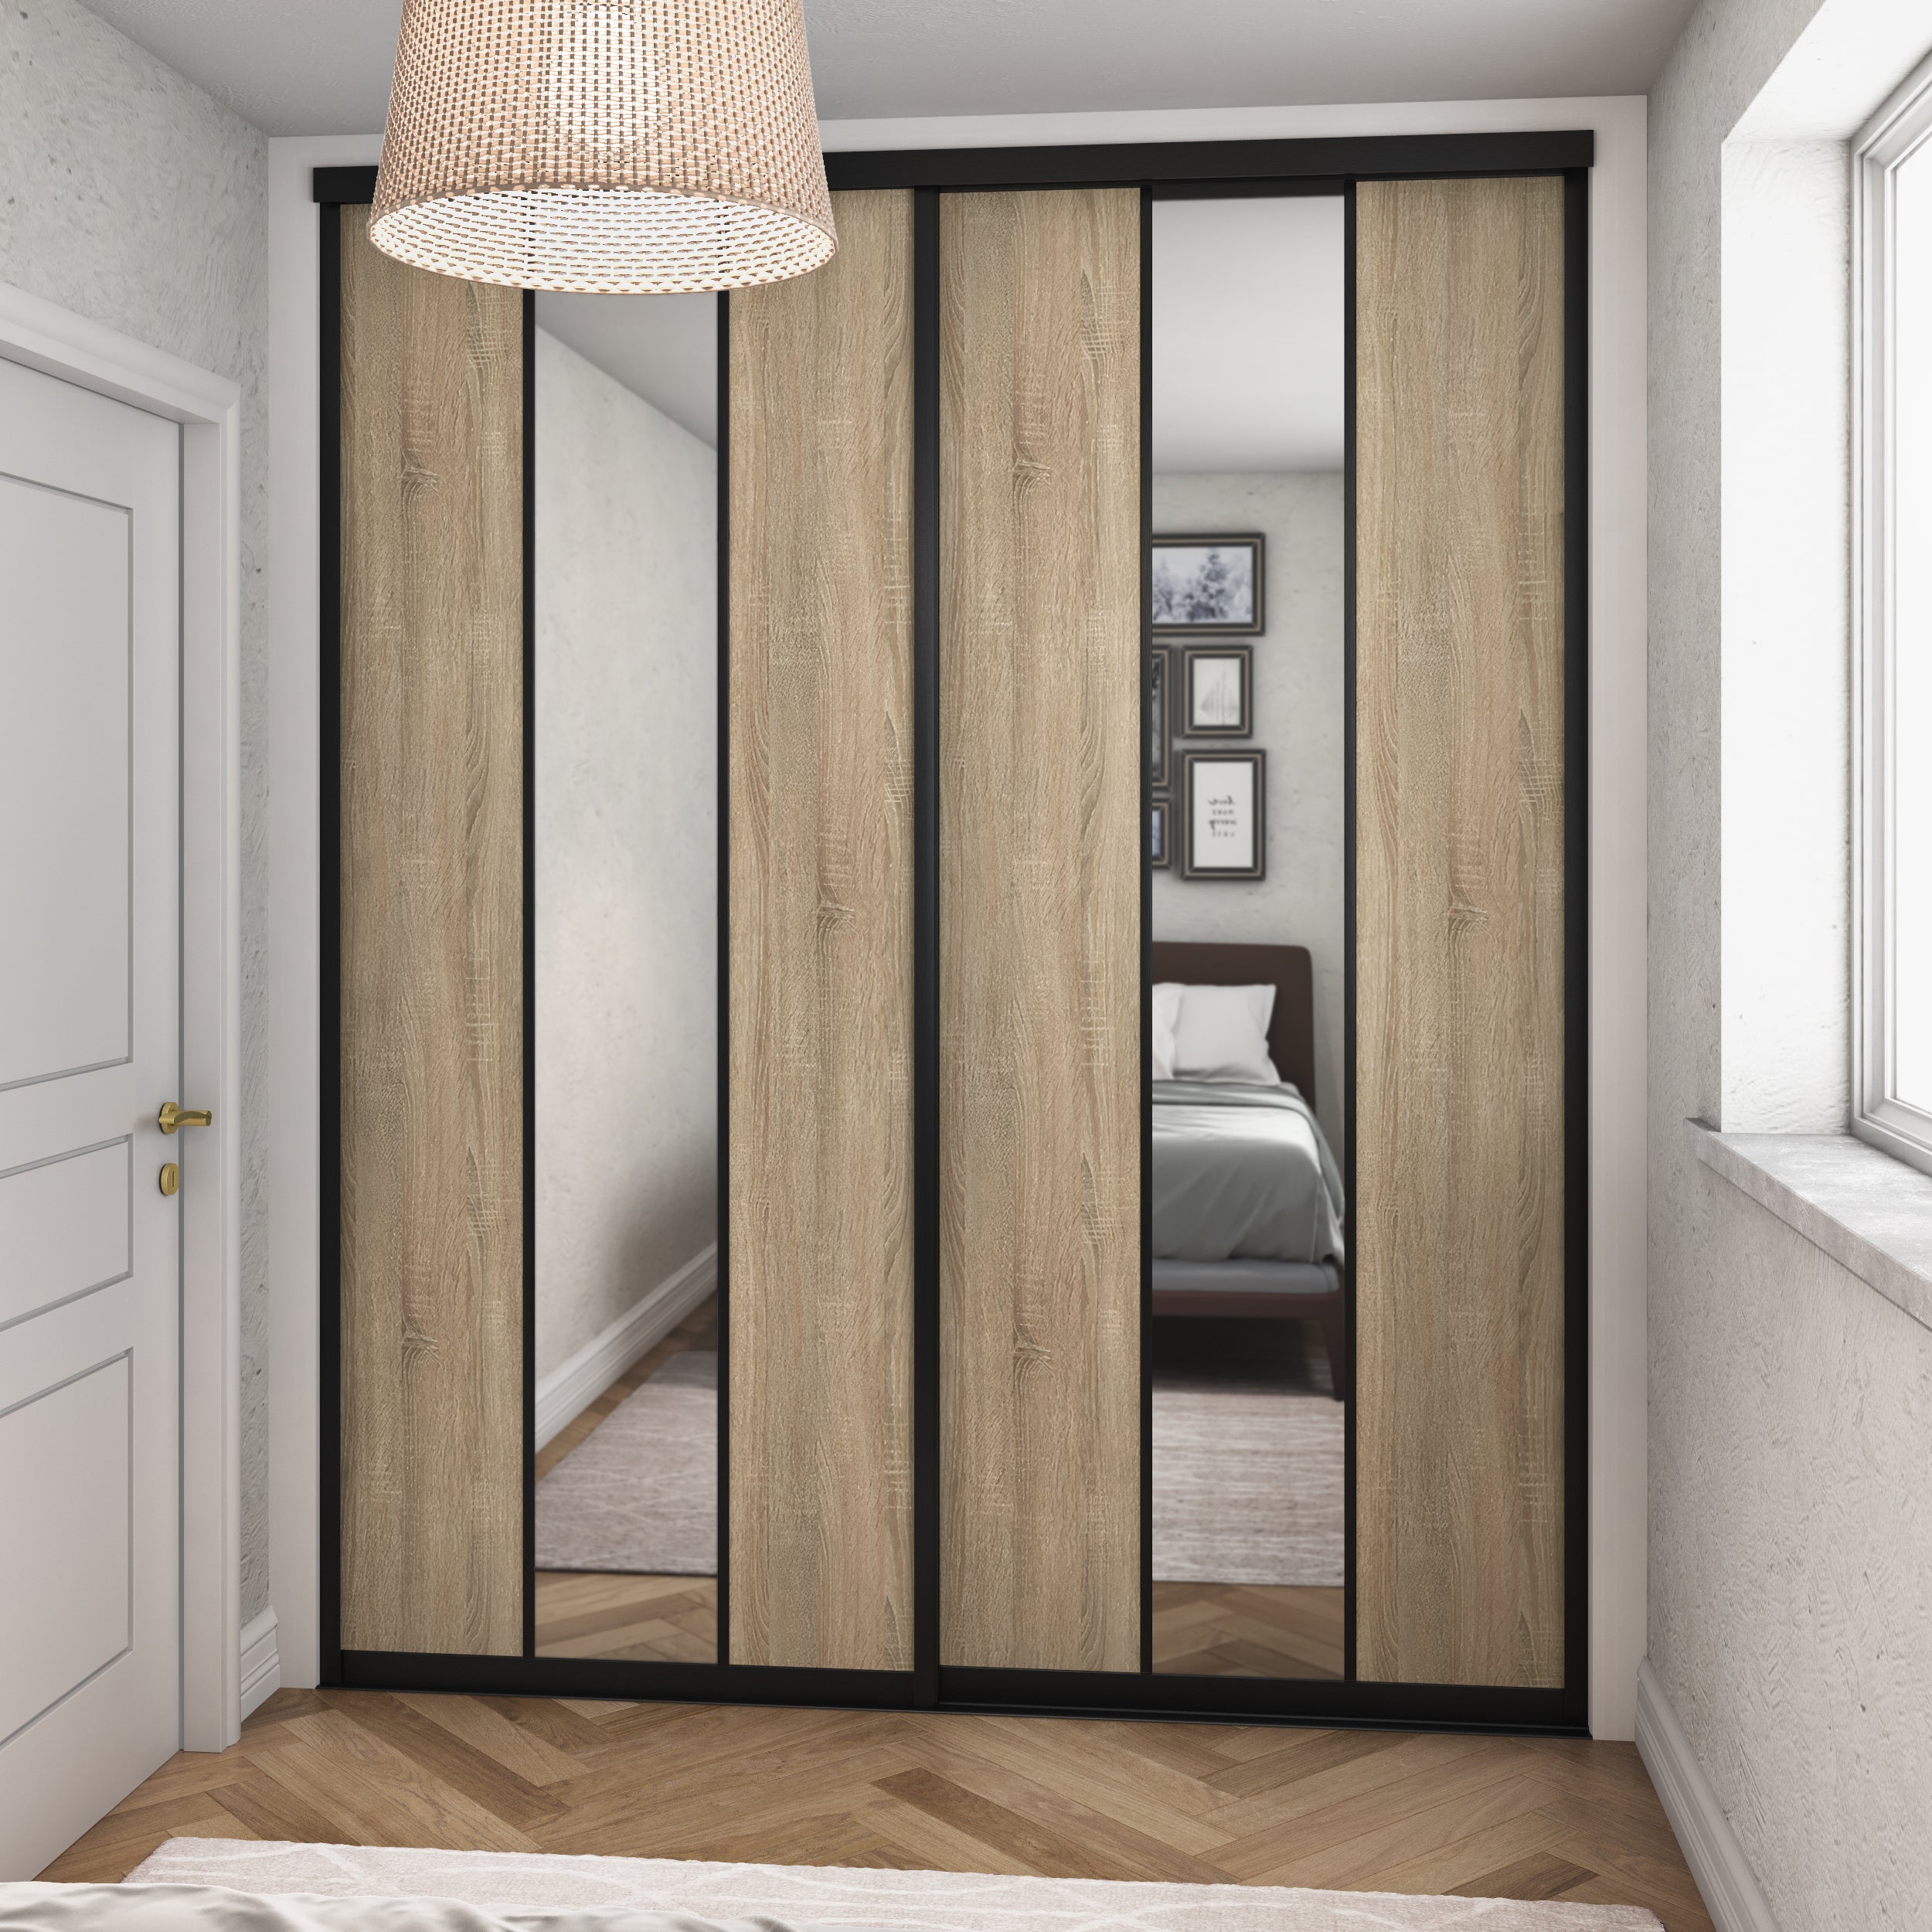 Schranktür-Set „Curve“ in gebürstetem Schwarz – 2 Türen im Verti-Design – Spiegel und graue Bardolino-Eiche – nach Maß gefertigt